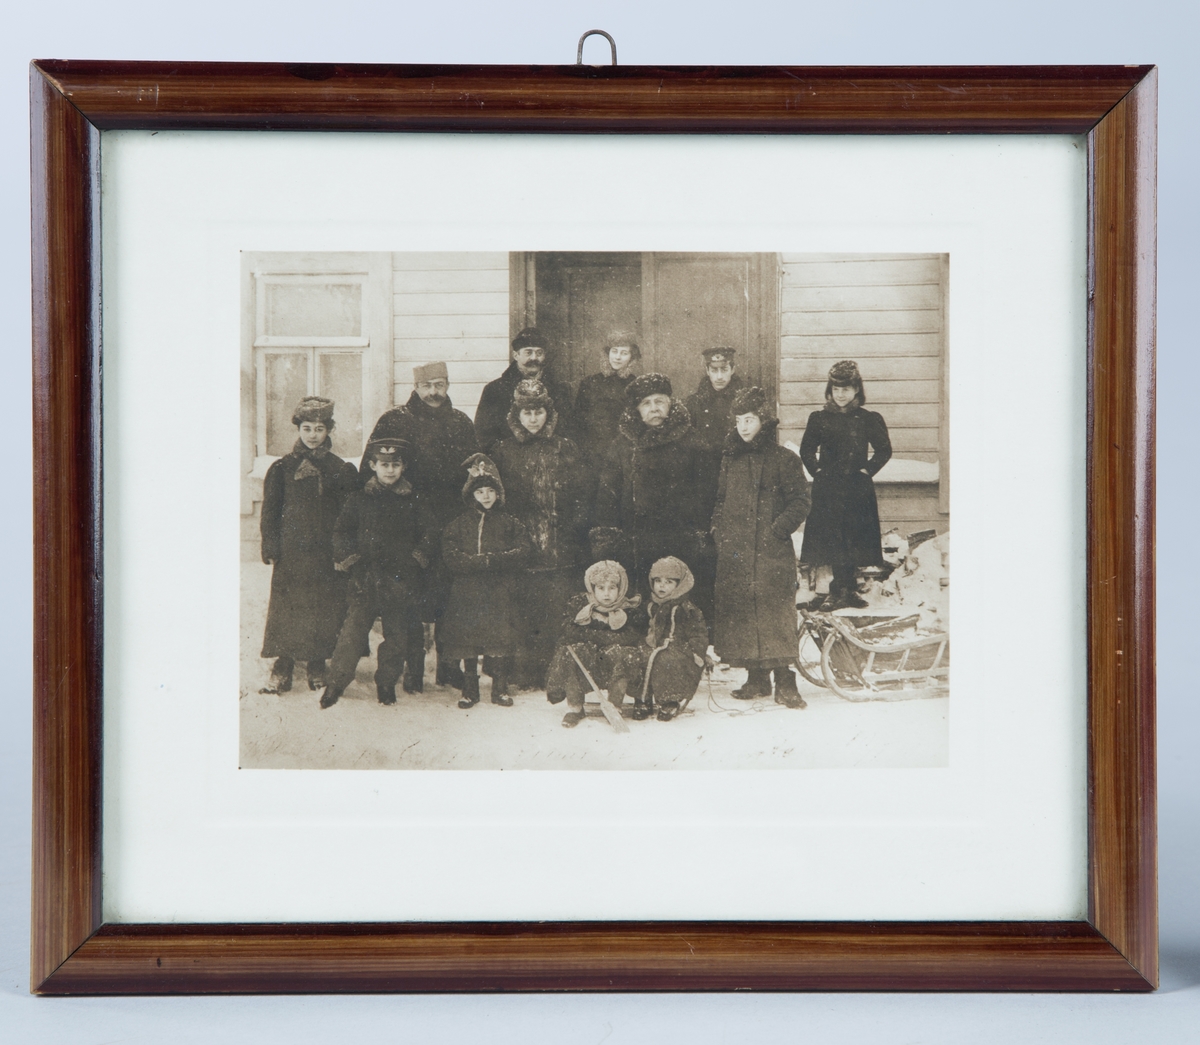 Familiefotografi av familien Rotin i Moskva (tekst på baksiden av rammen). Utendørs. 13 personer.